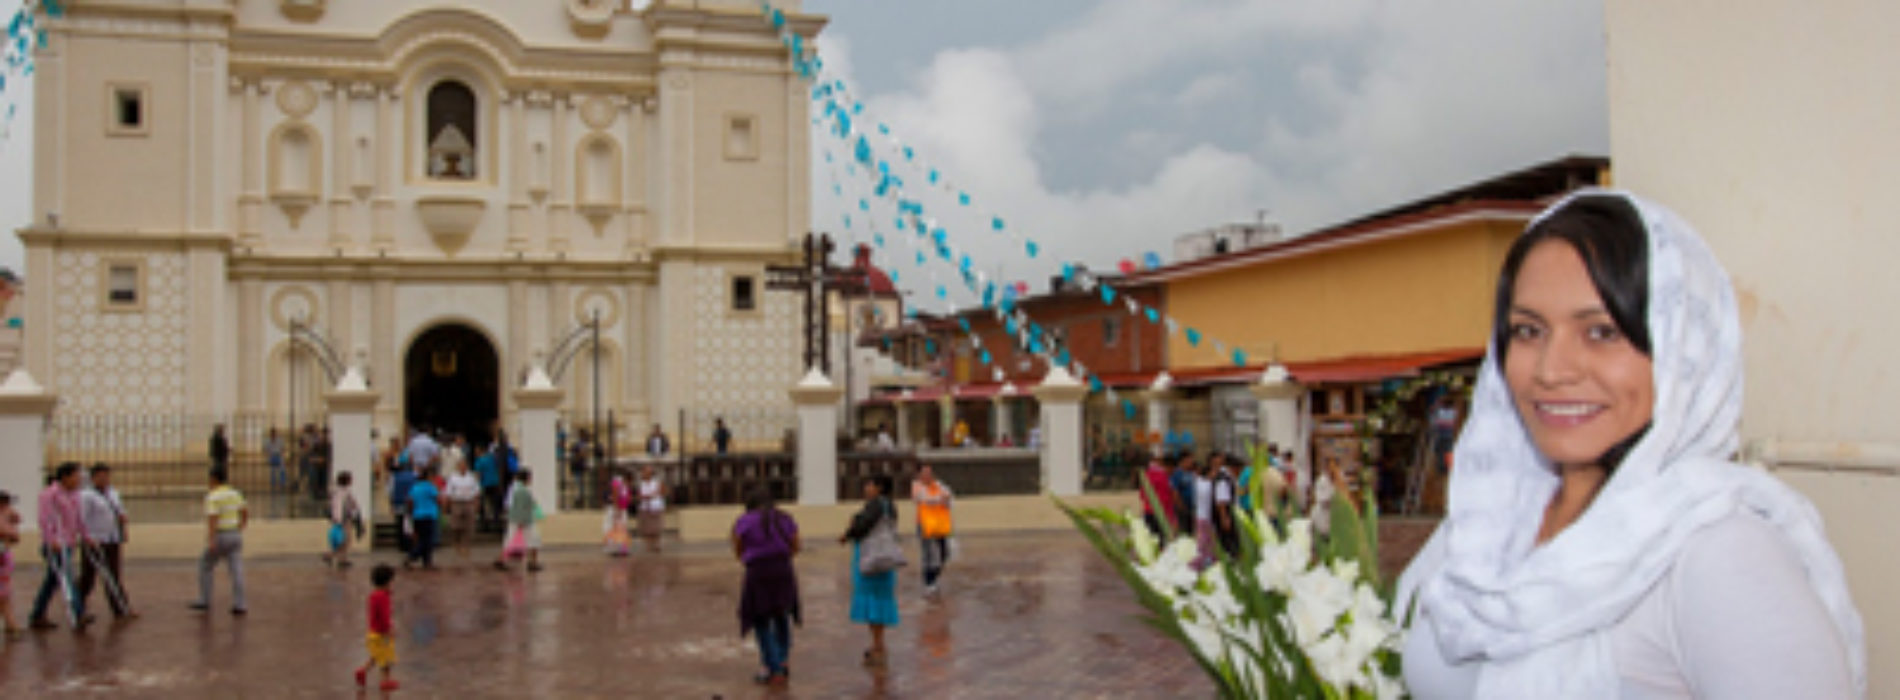 Riqueza natural, histórica y cultural se vive en las Rutas Turístico- Económicas de Oaxaca